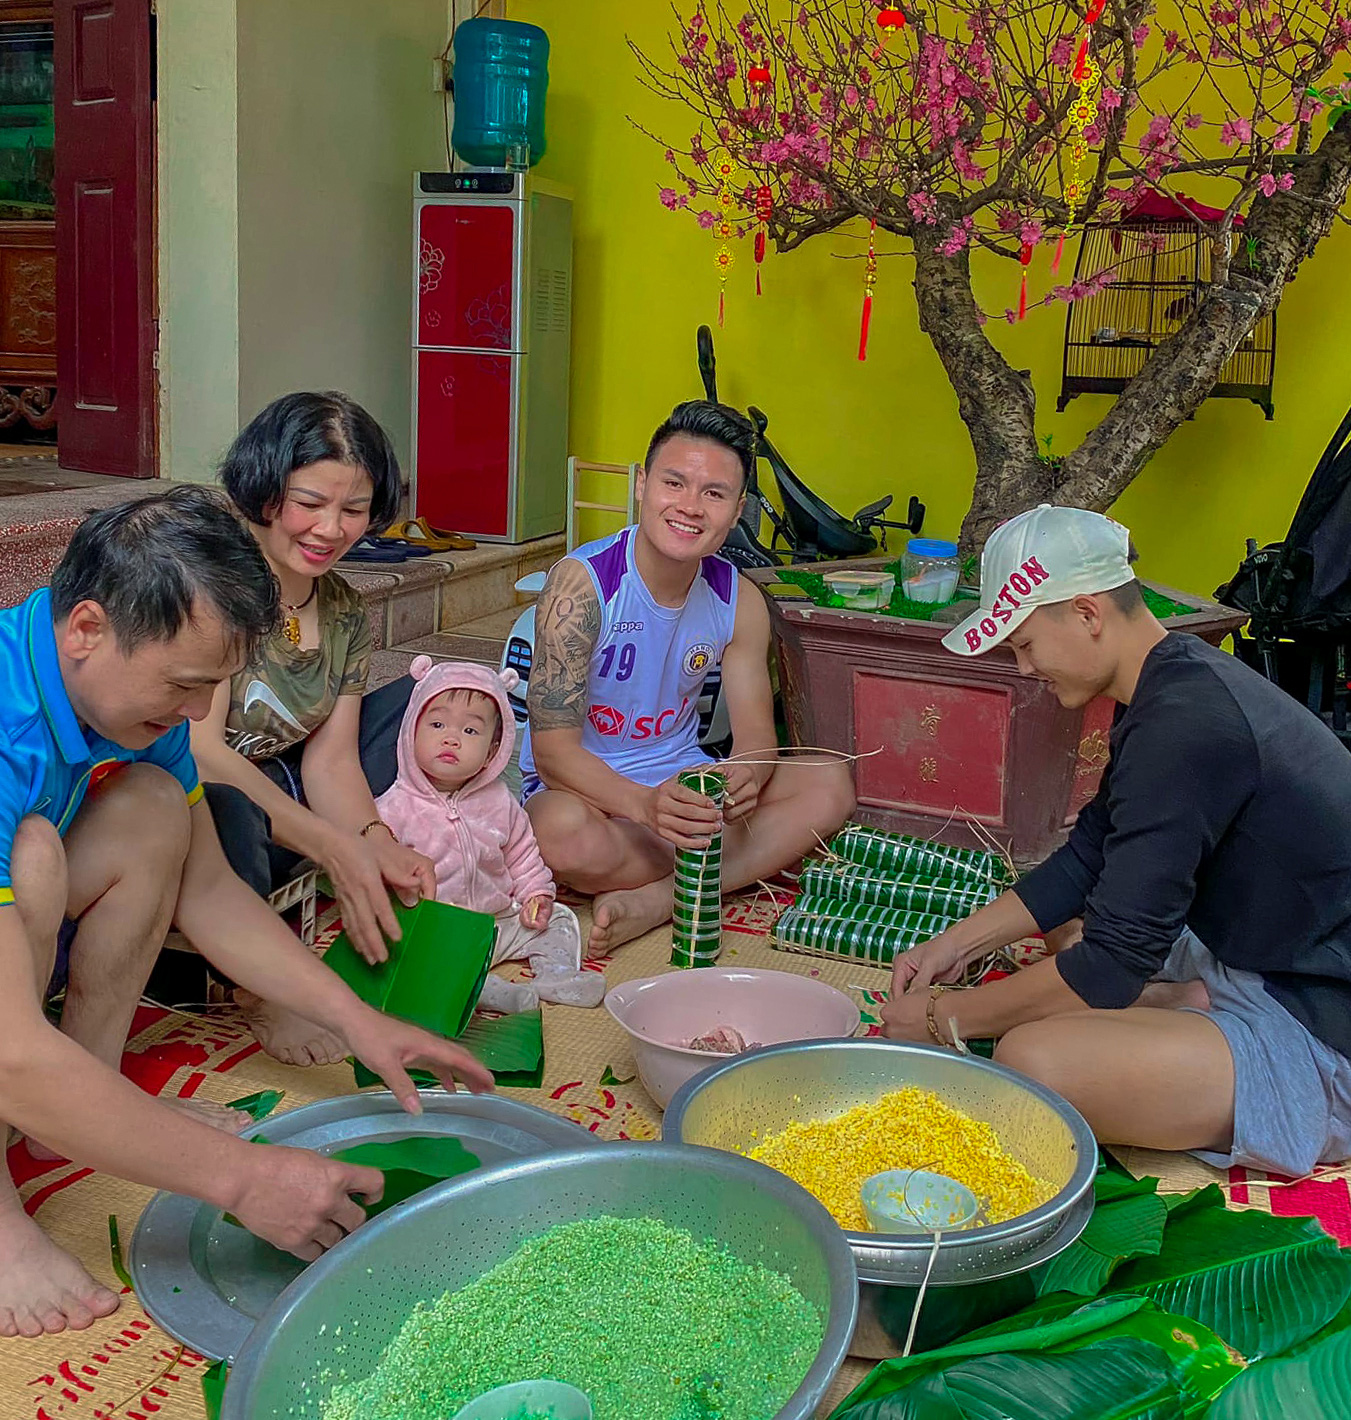 Bữa cơm đoàn viên/Tết gia đình: “Tết là dịp sum họp, quây quần bên gia đình và thưởng thức những món ăn đậm đà hương vị miền quê. Hãy cùng xem hình ảnh những bữa cơm đoàn viên ấm cúng và hạnh phúc nhất trong dịp Tết nguyên đán của người Việt.”